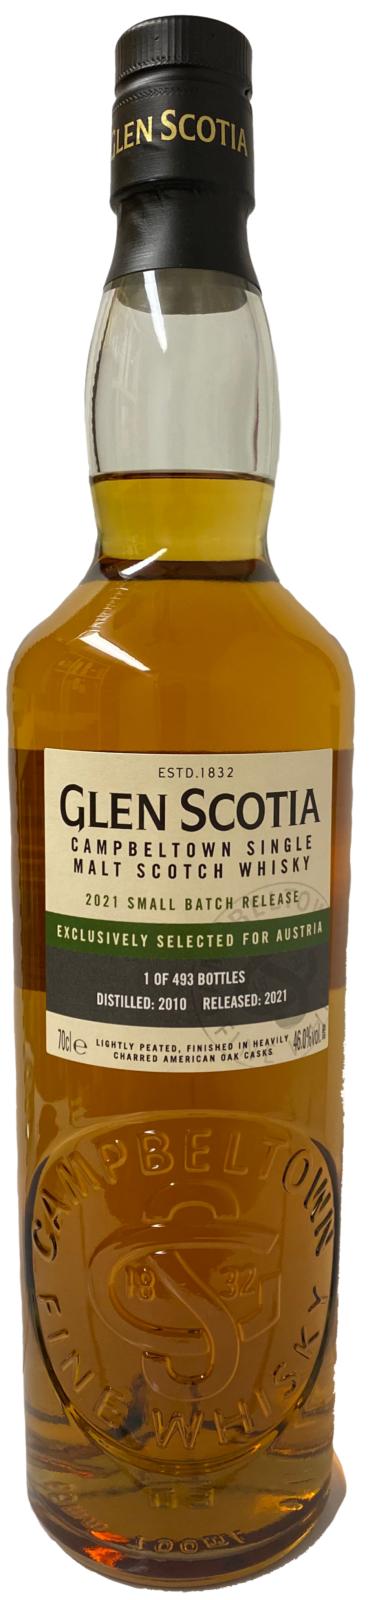 Glen Scotia 2010